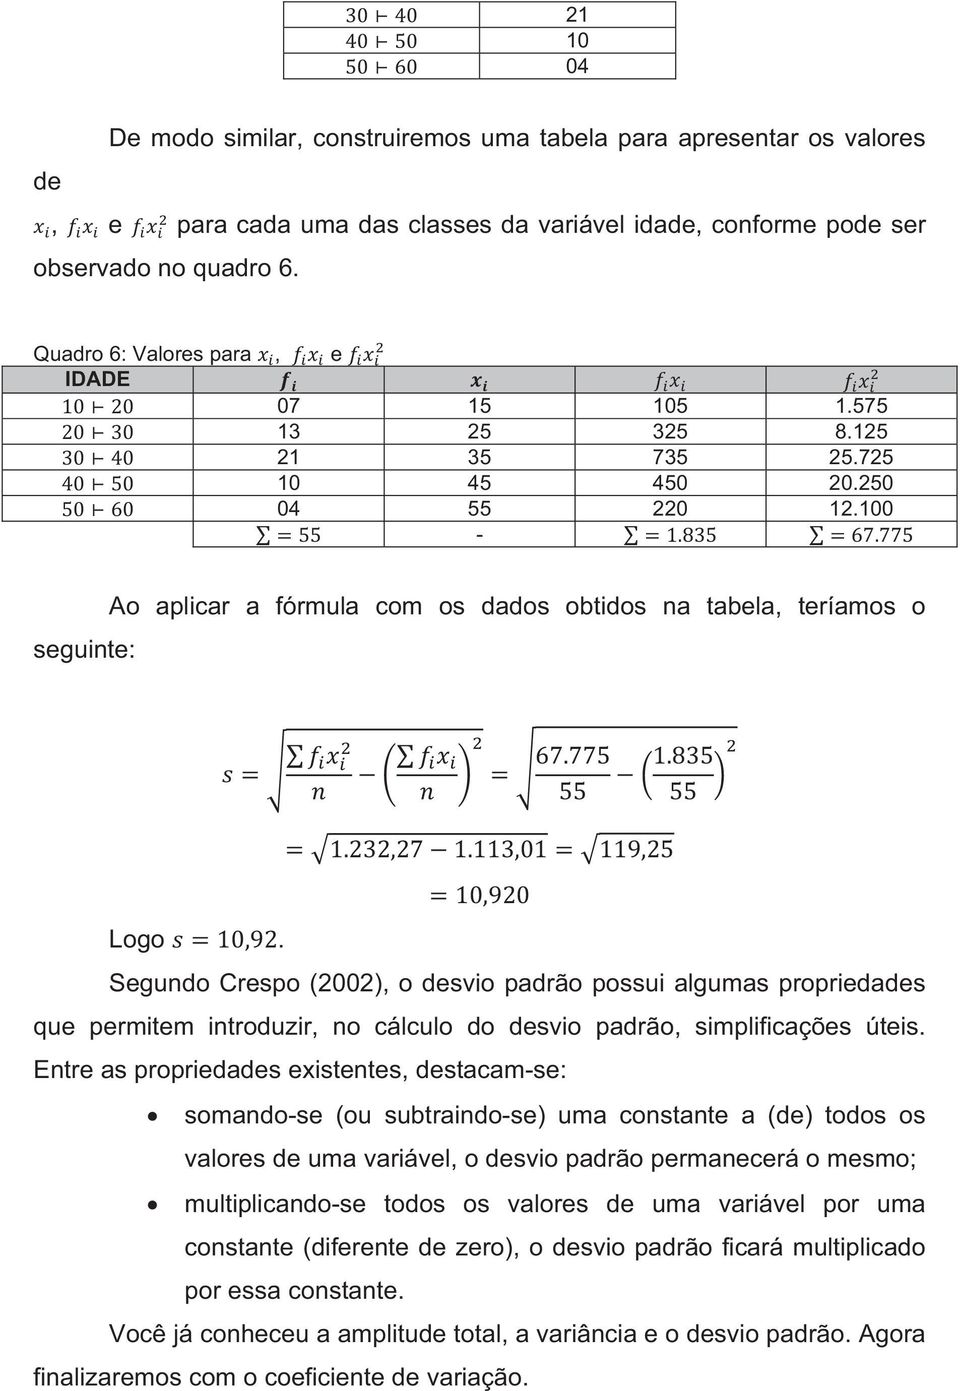 Segundo Crespo (2002), o desvio padrão possui algumas propriedades que permitem introduzir, no cálculo do desvio padrão, simplificações úteis.